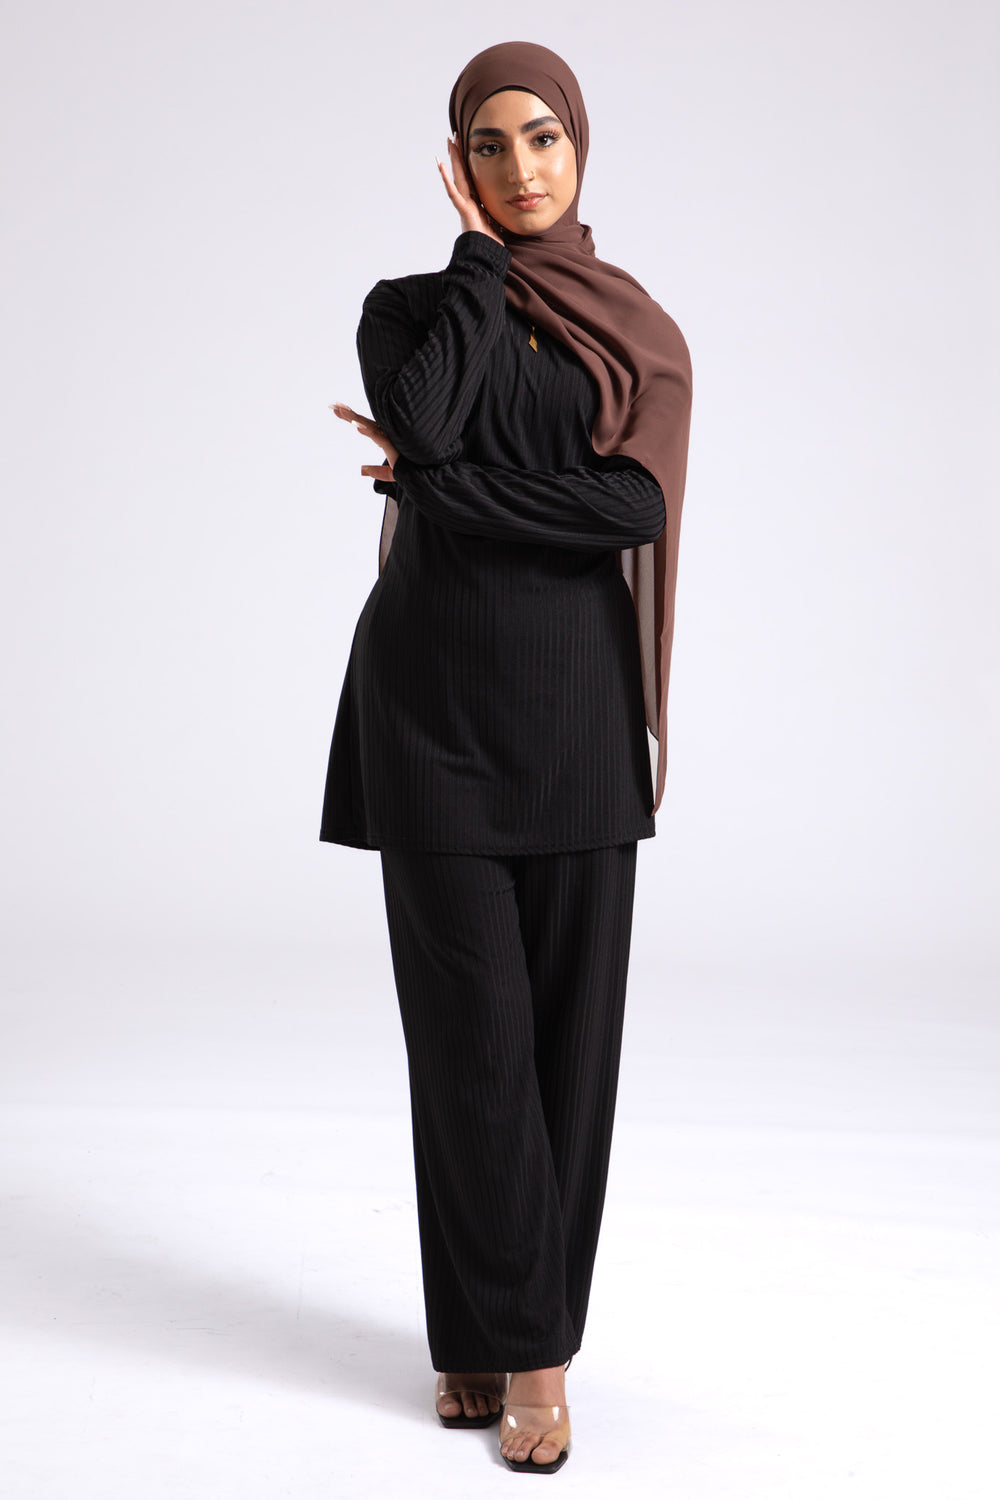 Chicory Coffee Chiffon Hijab